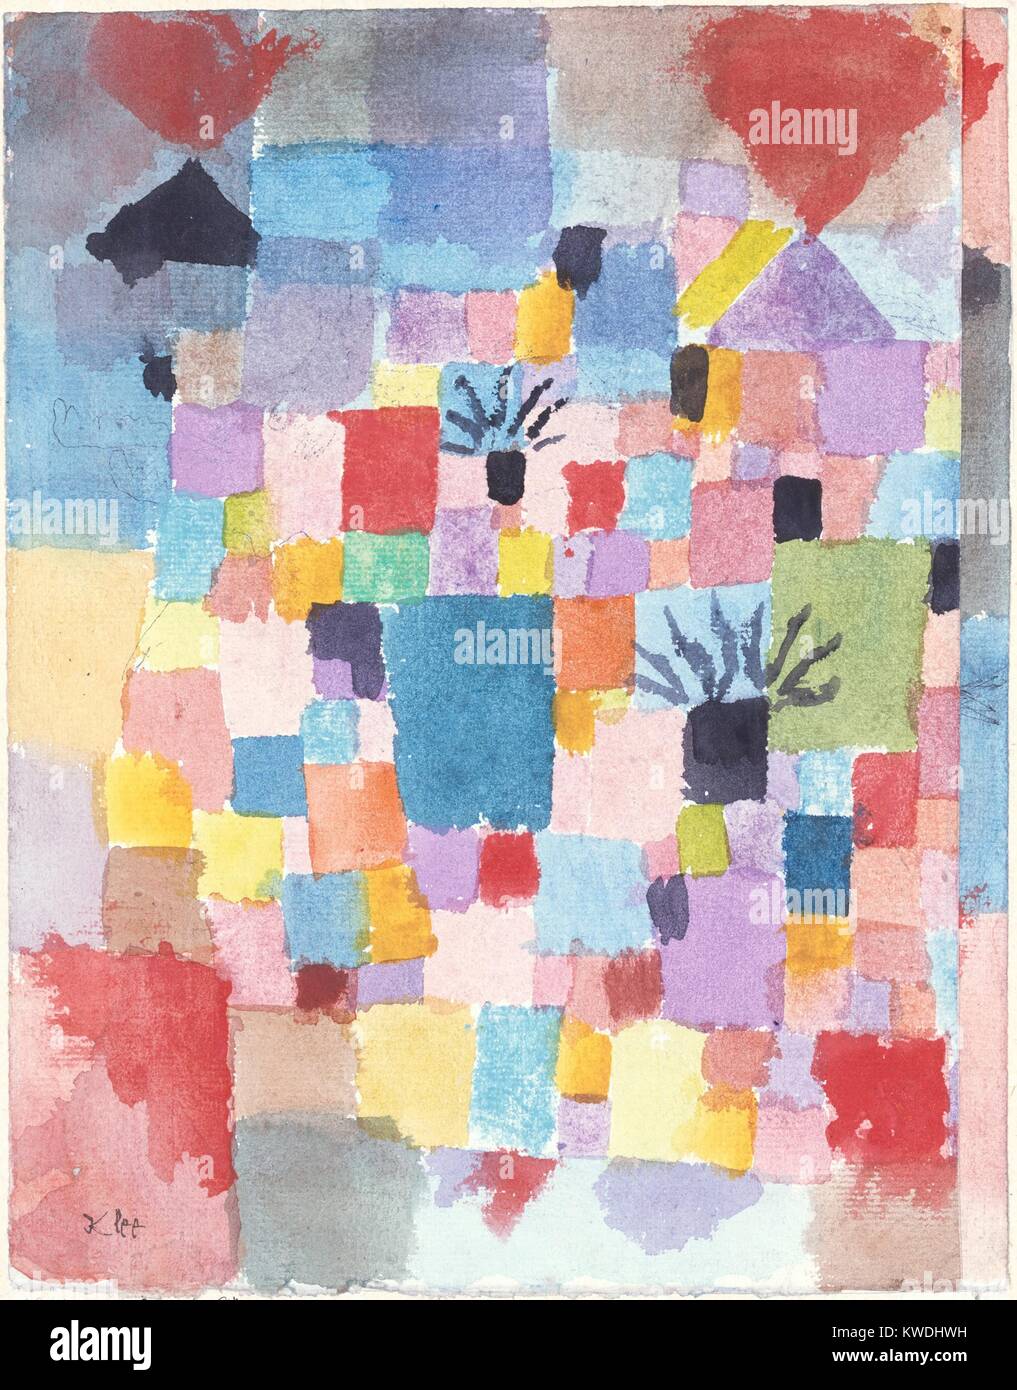 Südlichen Gärten, von Paul Klee, 1913, Schweizer Zeichnung, Aquarell und Tusche auf Papier. Dieser frühen abstrakten Arbeit wurde unter dem Einfluss der Kubisten Picasso und Braque gemalt, und die abstrakte Coloristen Robert Delaunay und August Macke. (BSLOC 2017 7 55) Stockfoto